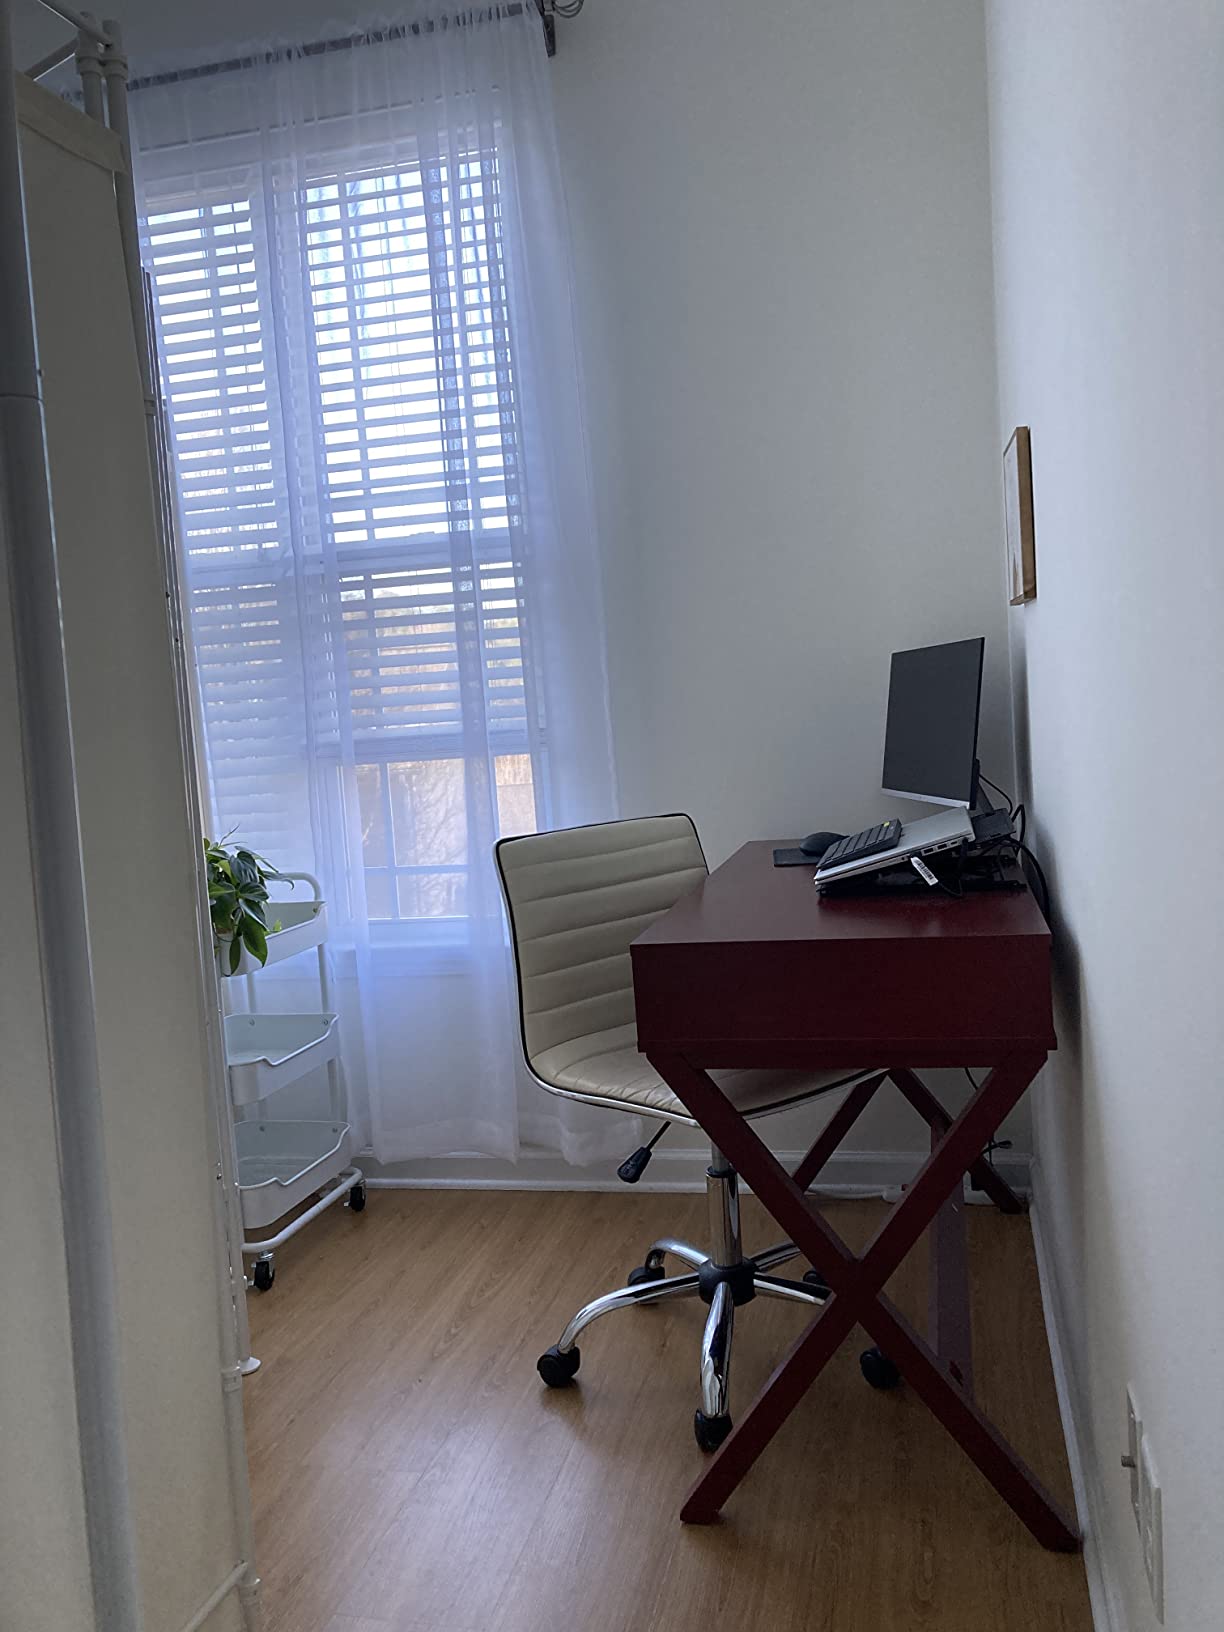 Home office - small condo